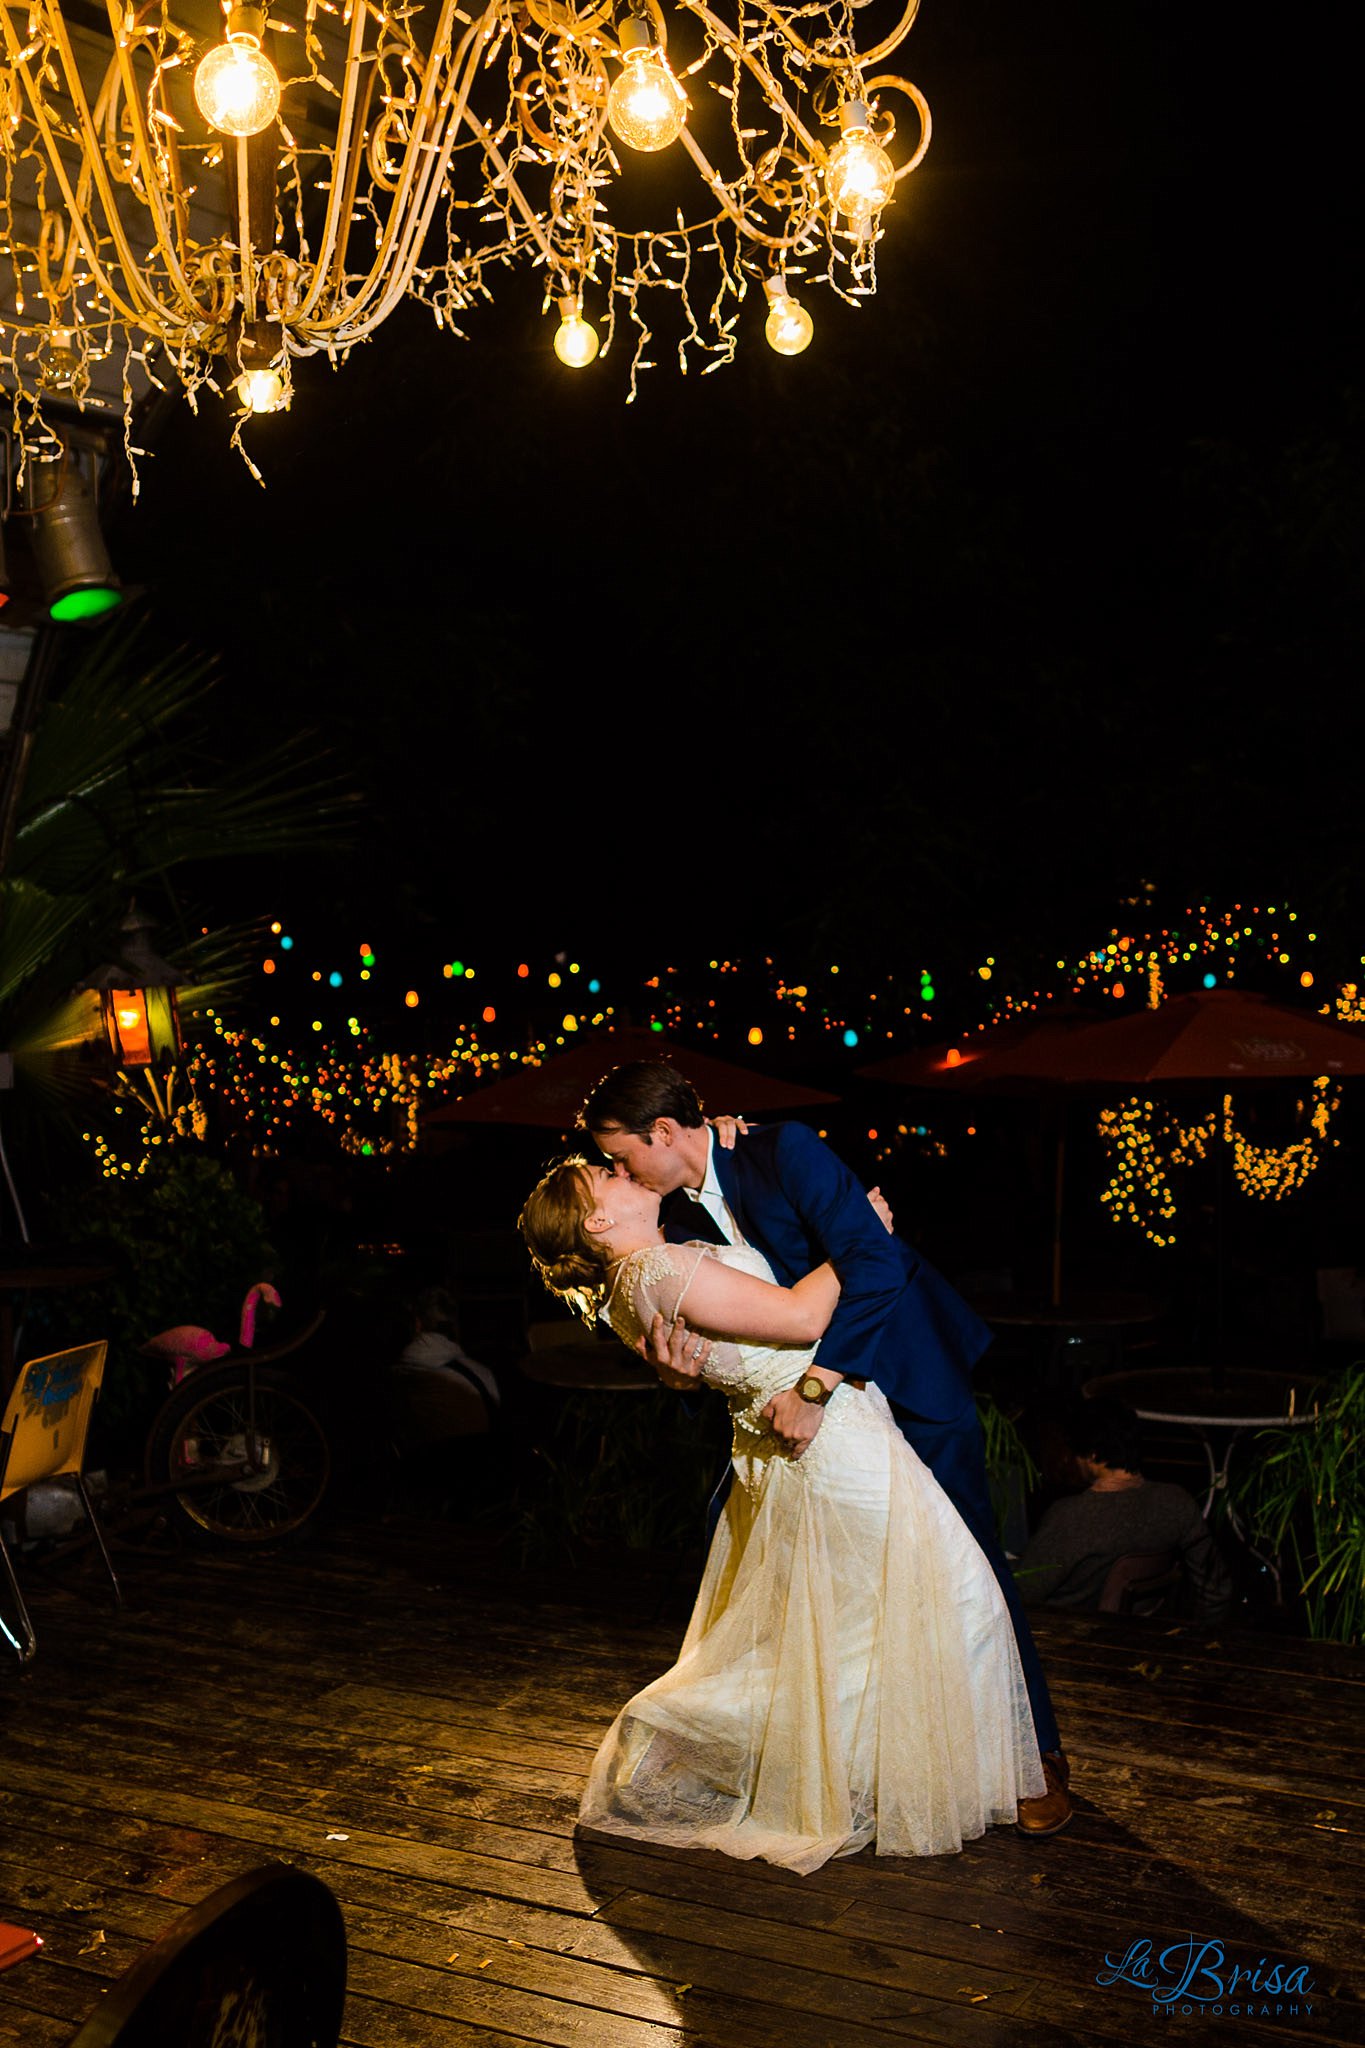 Lauren & Matt | Wedding Photography Preview | Austin, TX | Chris Hsieh